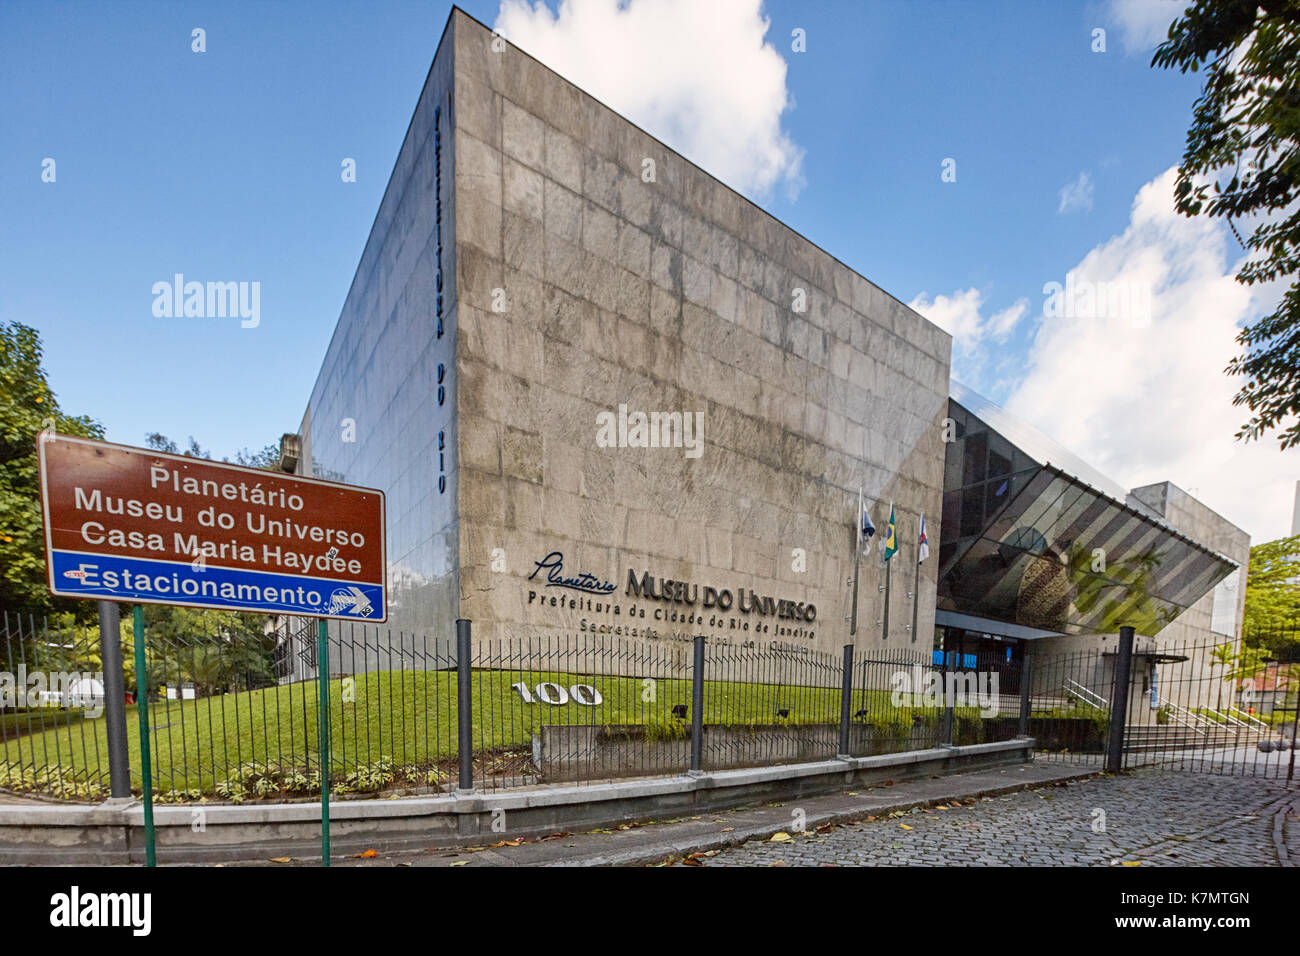 Museu do Universo (Musée de l'univers), Planetário do Rio (Planétarium de Rio), Rio de Janeiro, Brésil Banque D'Images